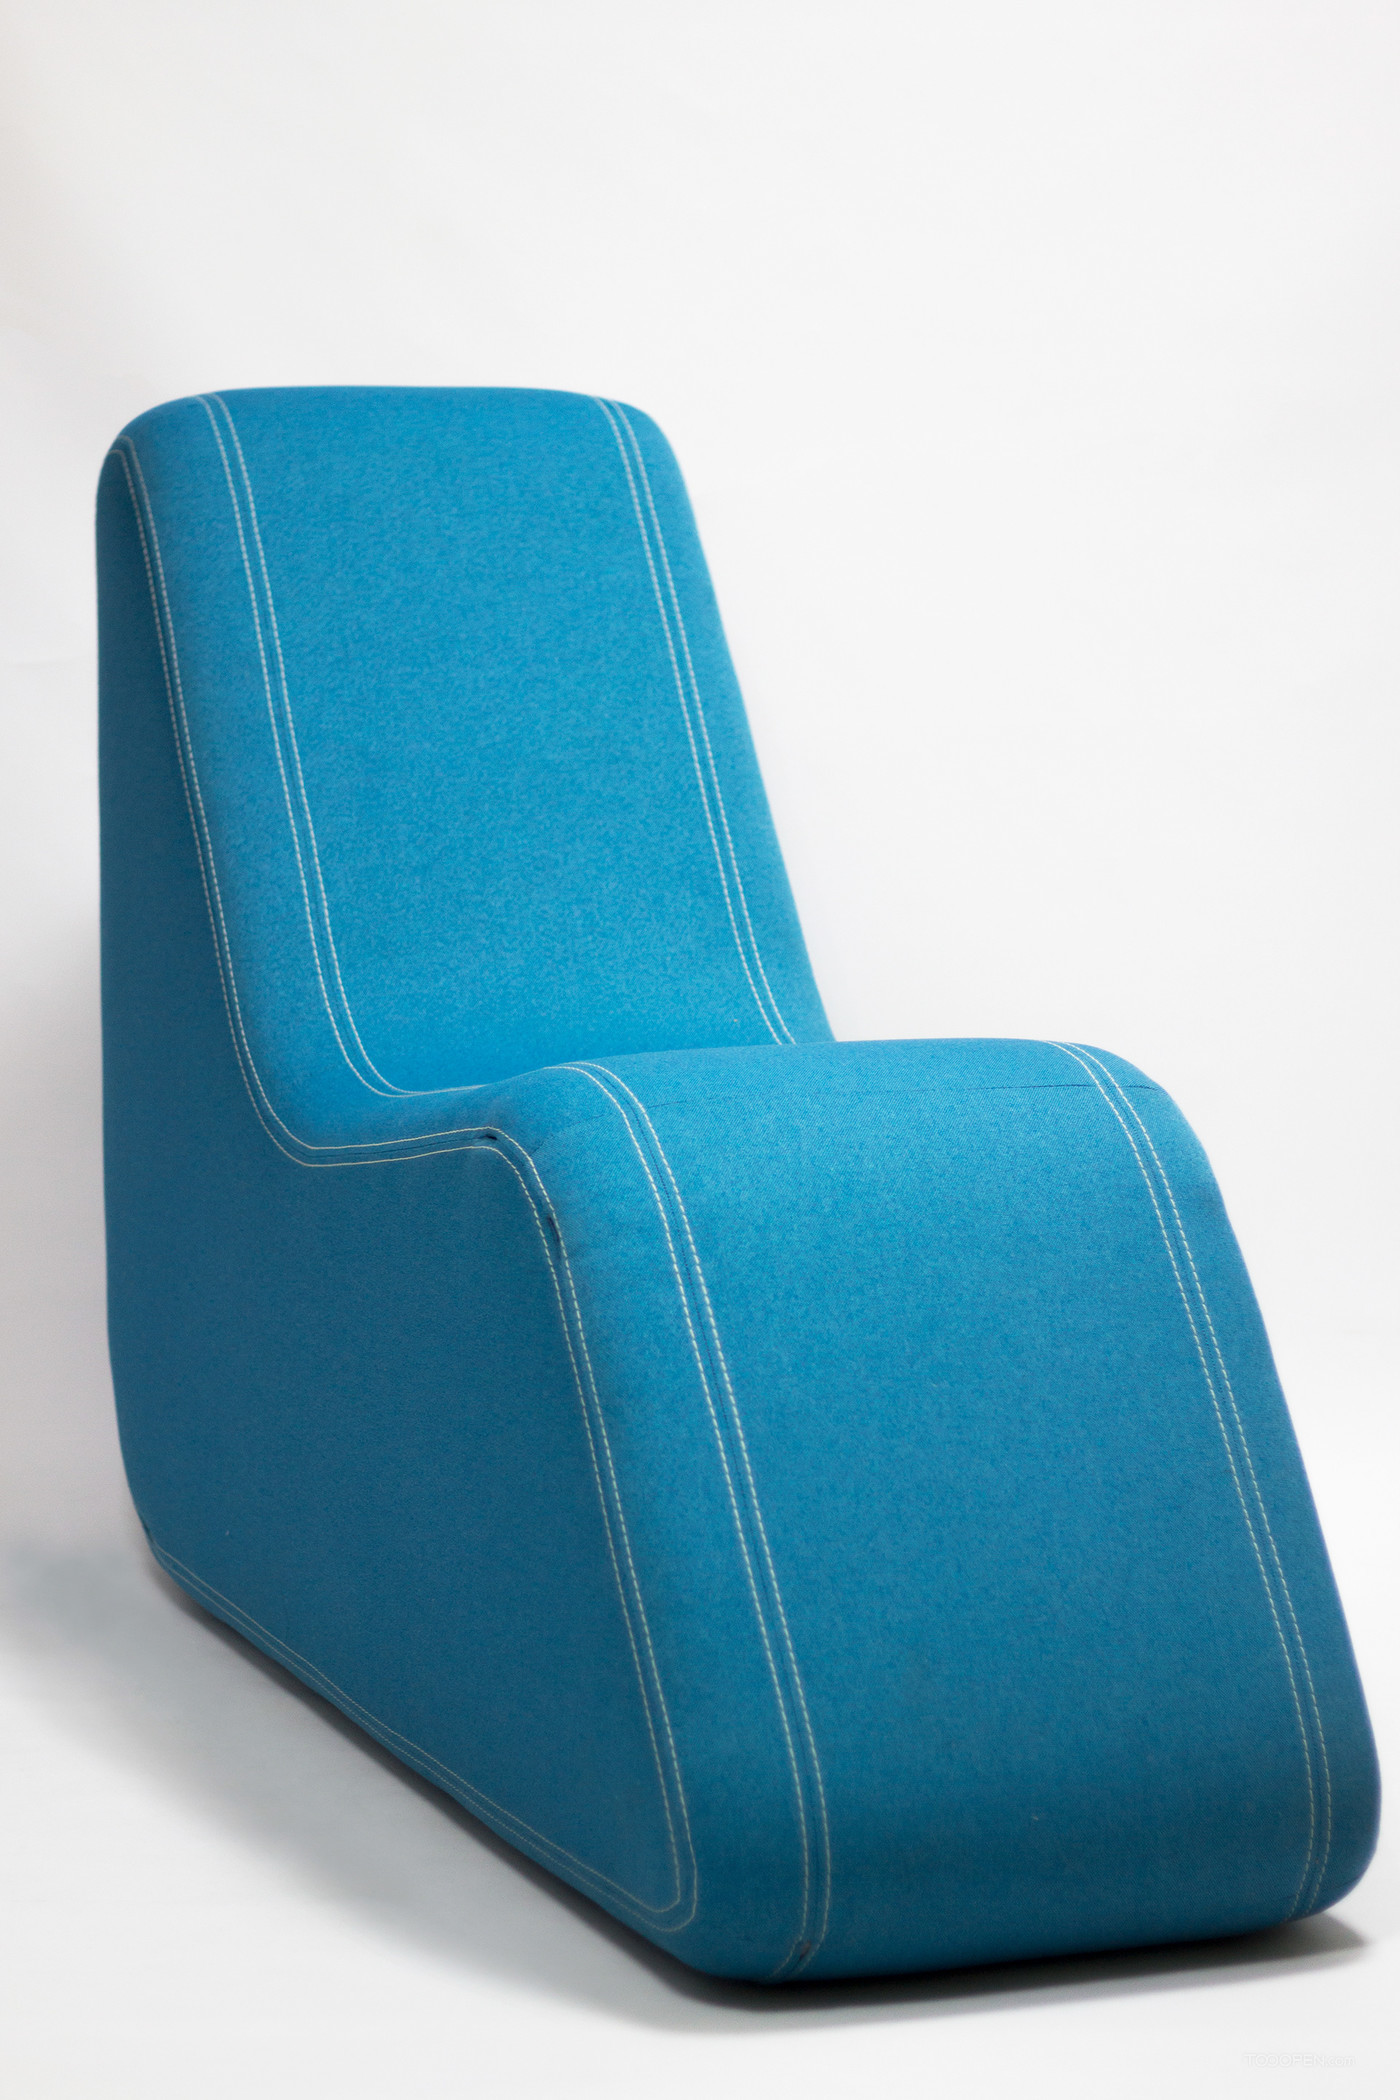 不同造型不同坐姿的沙发家具设计欣赏-08